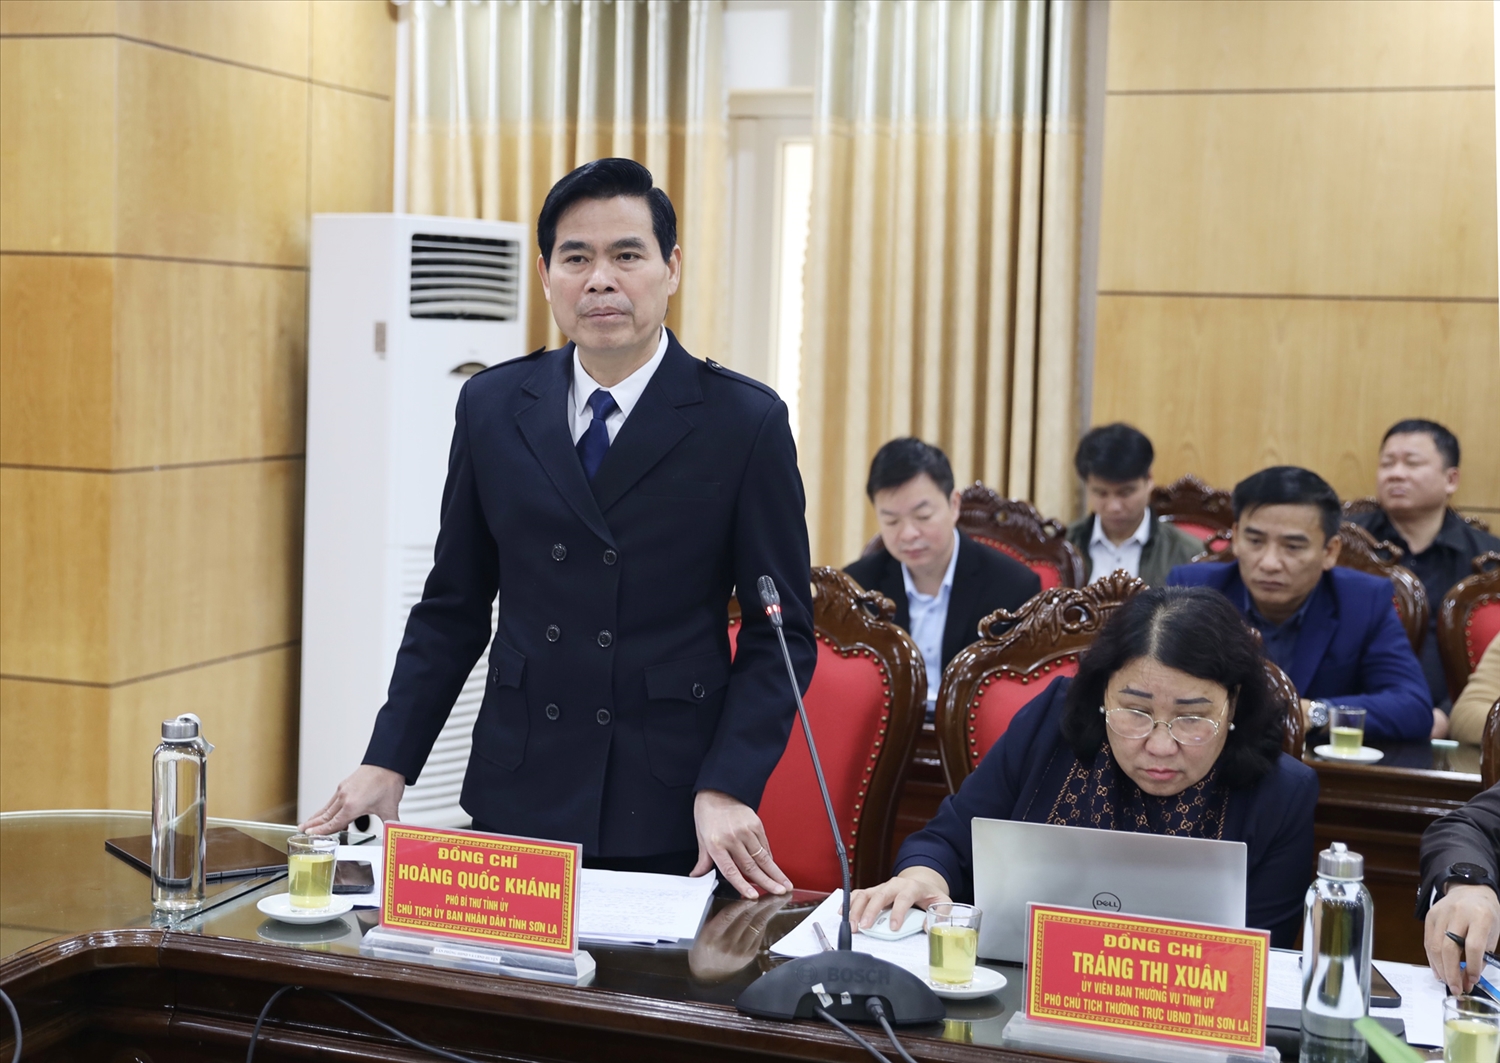 Chủ tịch UBND tỉnh Sơn La Hoàng Quốc Khánh mong muốn Ban Chỉ đạo Trung ương các Chương trình MTQG tiếp tục quan tâm, hỗ trợ tỉnh thực hiện hiệu quả các Chương trình MTQG